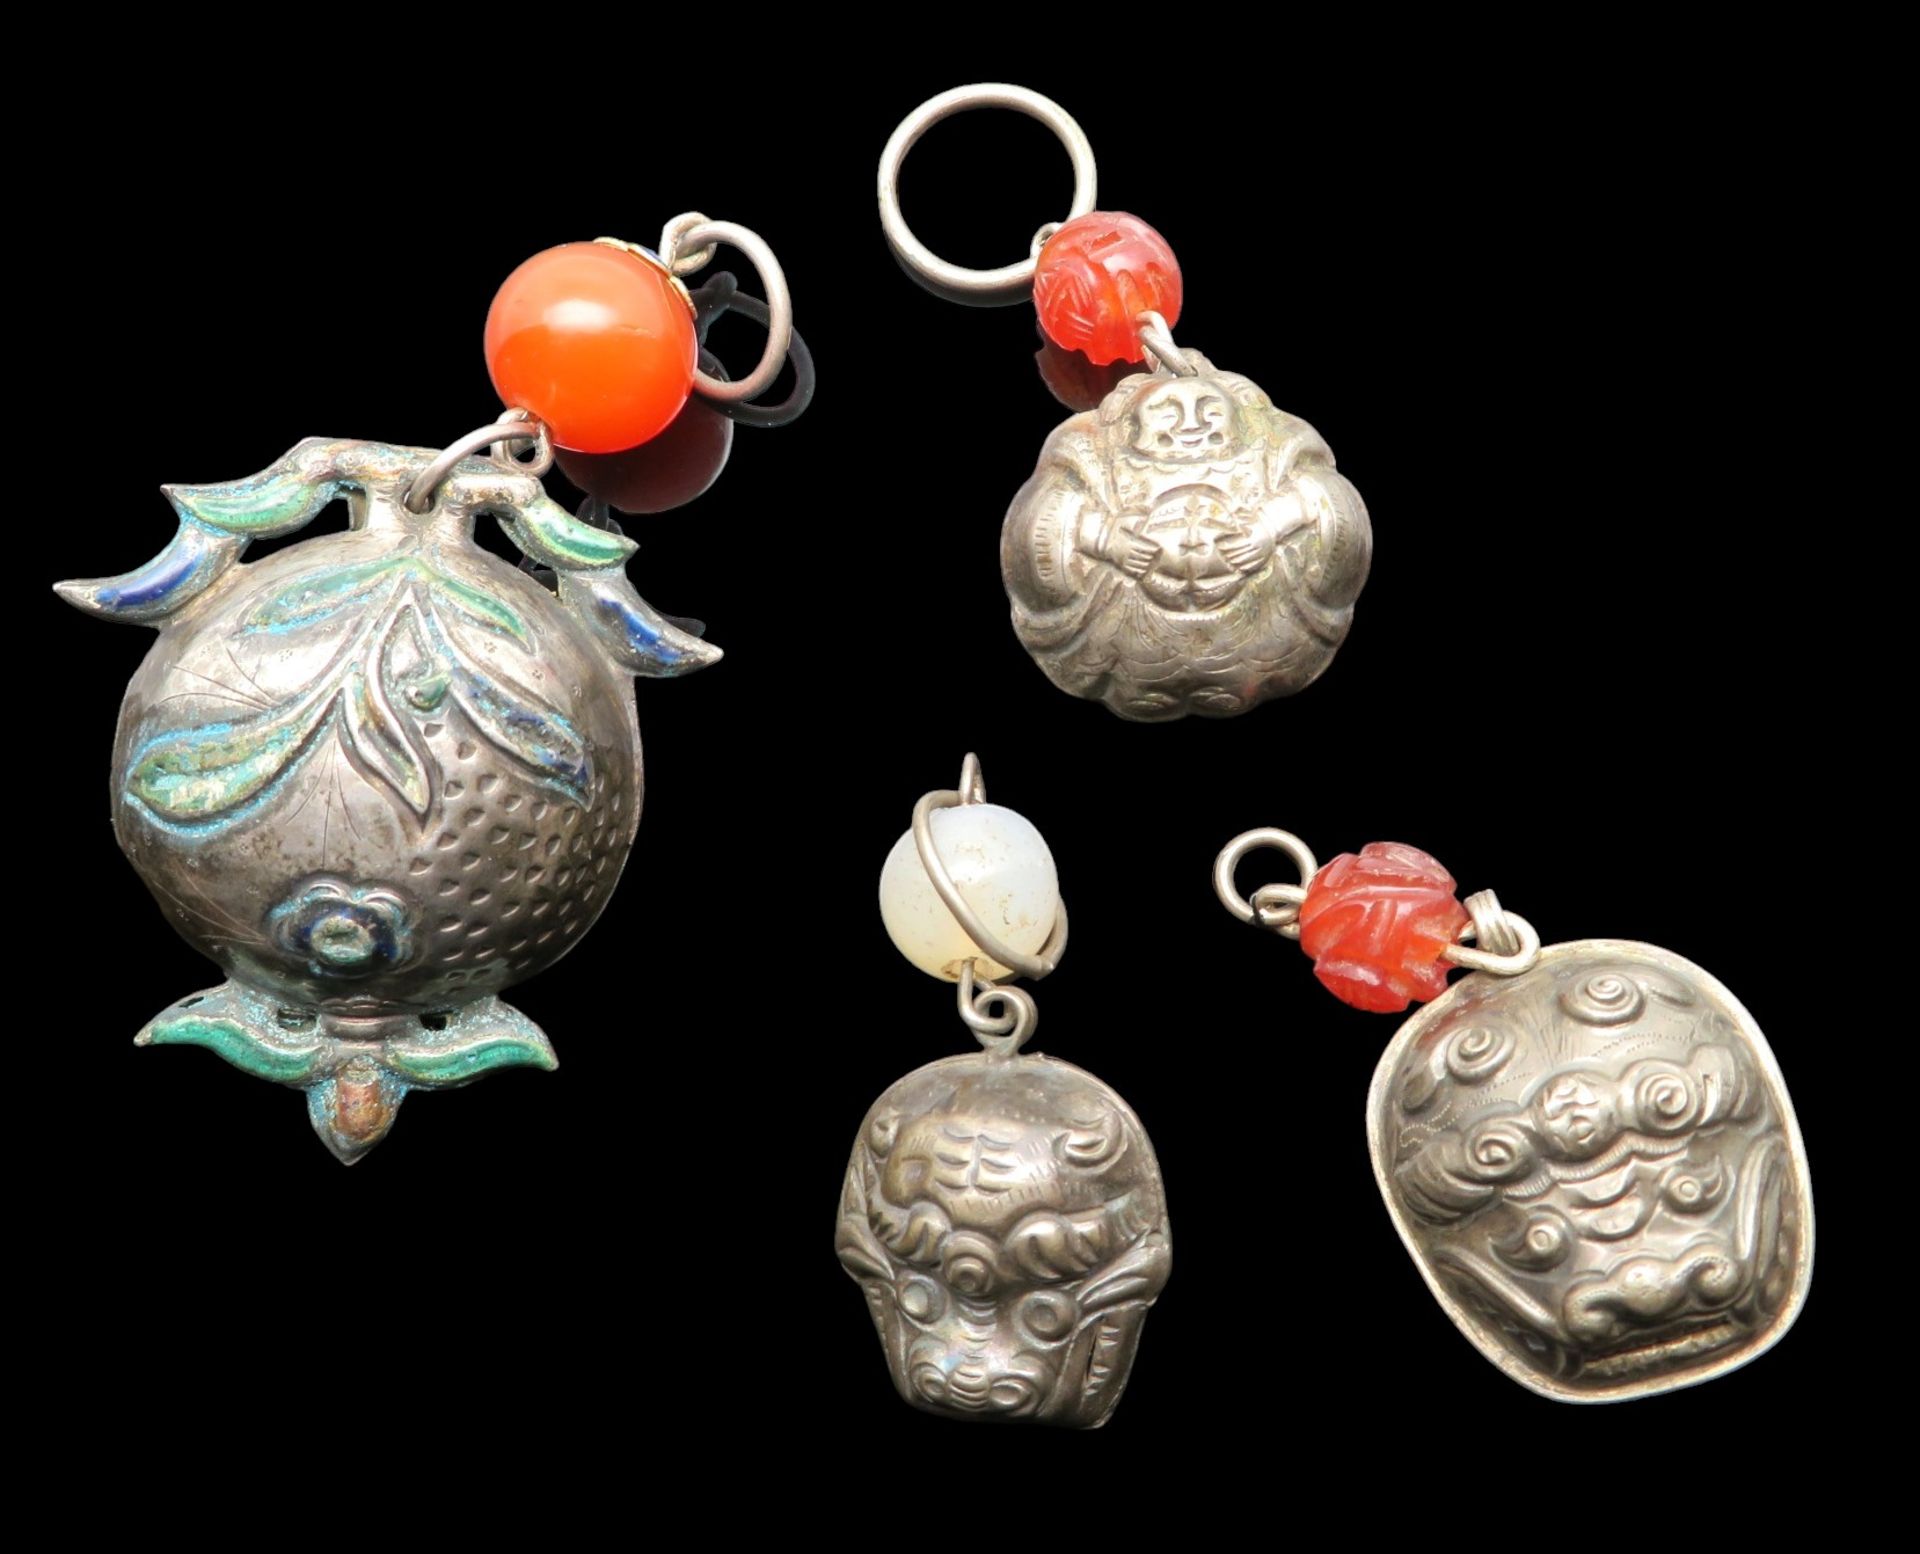 4 antike Glocken, wohl China/Tibet, um 1900, Silber, teils mit (geschnitztem) Karneolbehang, 1 x mi